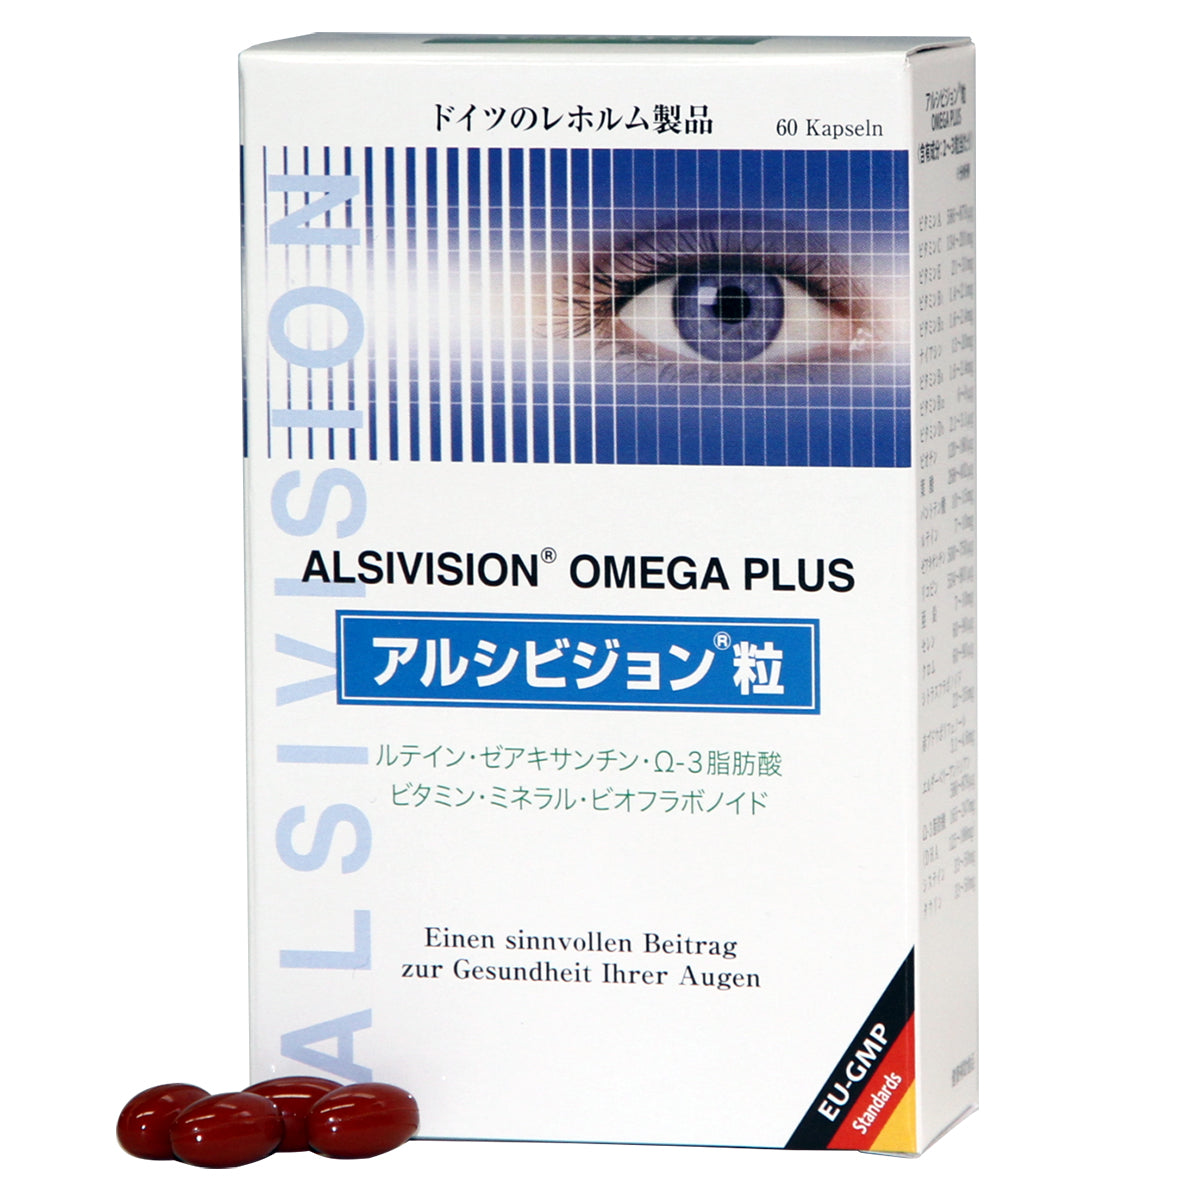 アルシビジョン粒 2箱セット OMEGA PLUS ルティン ゼアキサンチン Ω-3脂肪酸